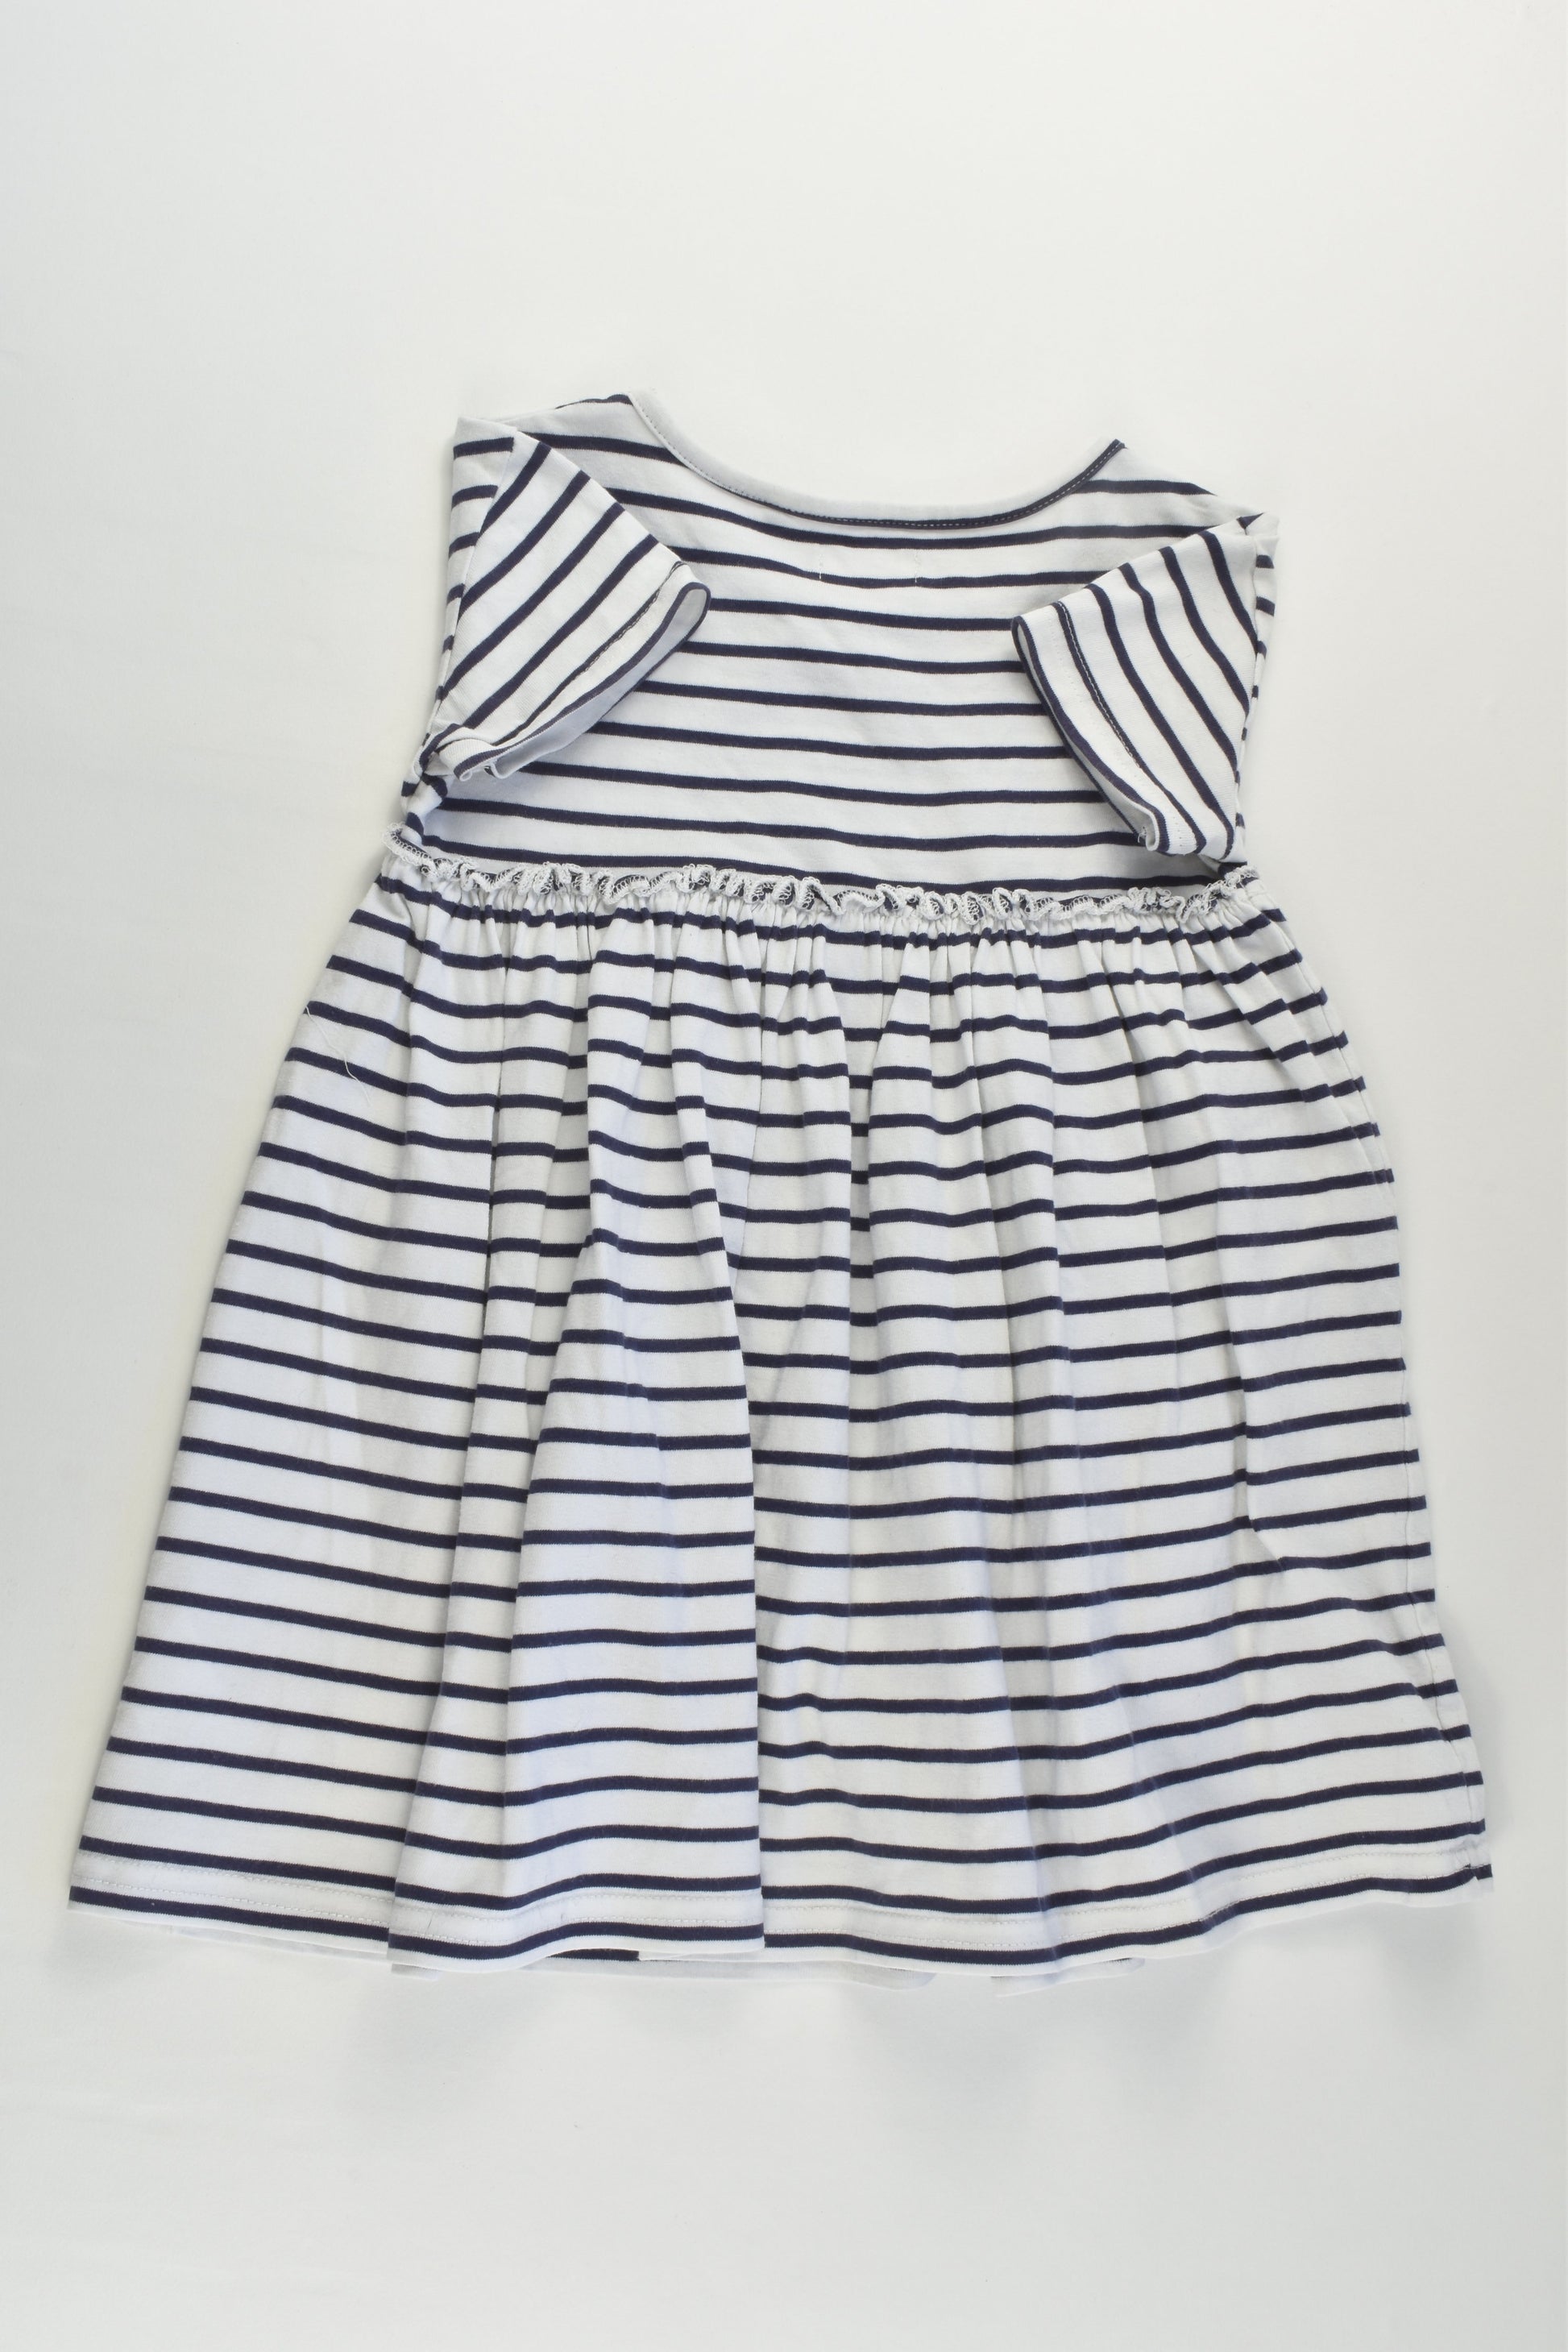 Next Size 2 (92 cm) Striped Dress